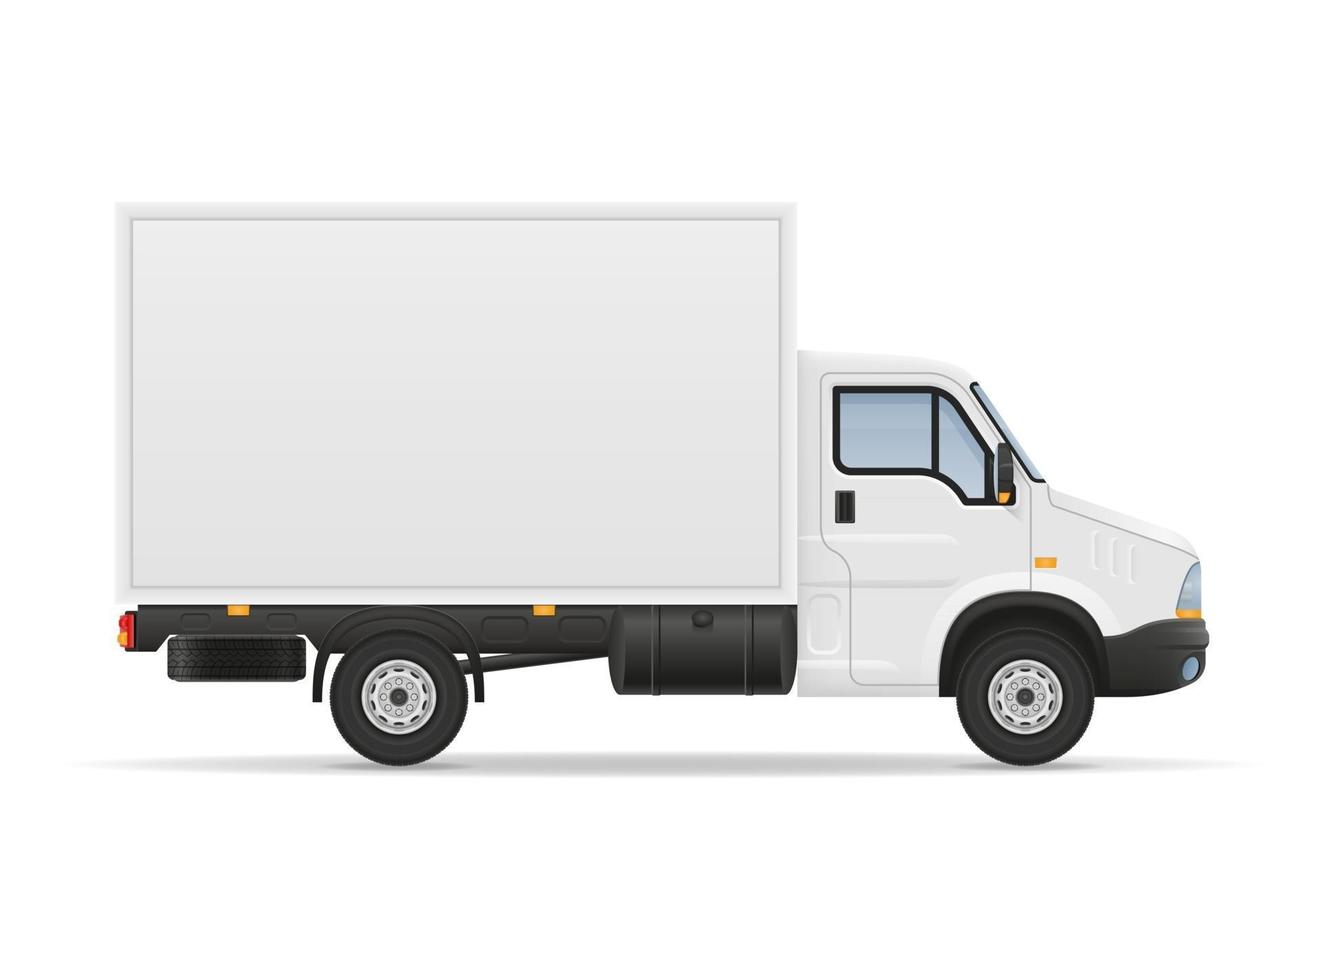 petit camion van camion pour le transport de marchandises de fret stock vector illustration isolé sur fond blanc